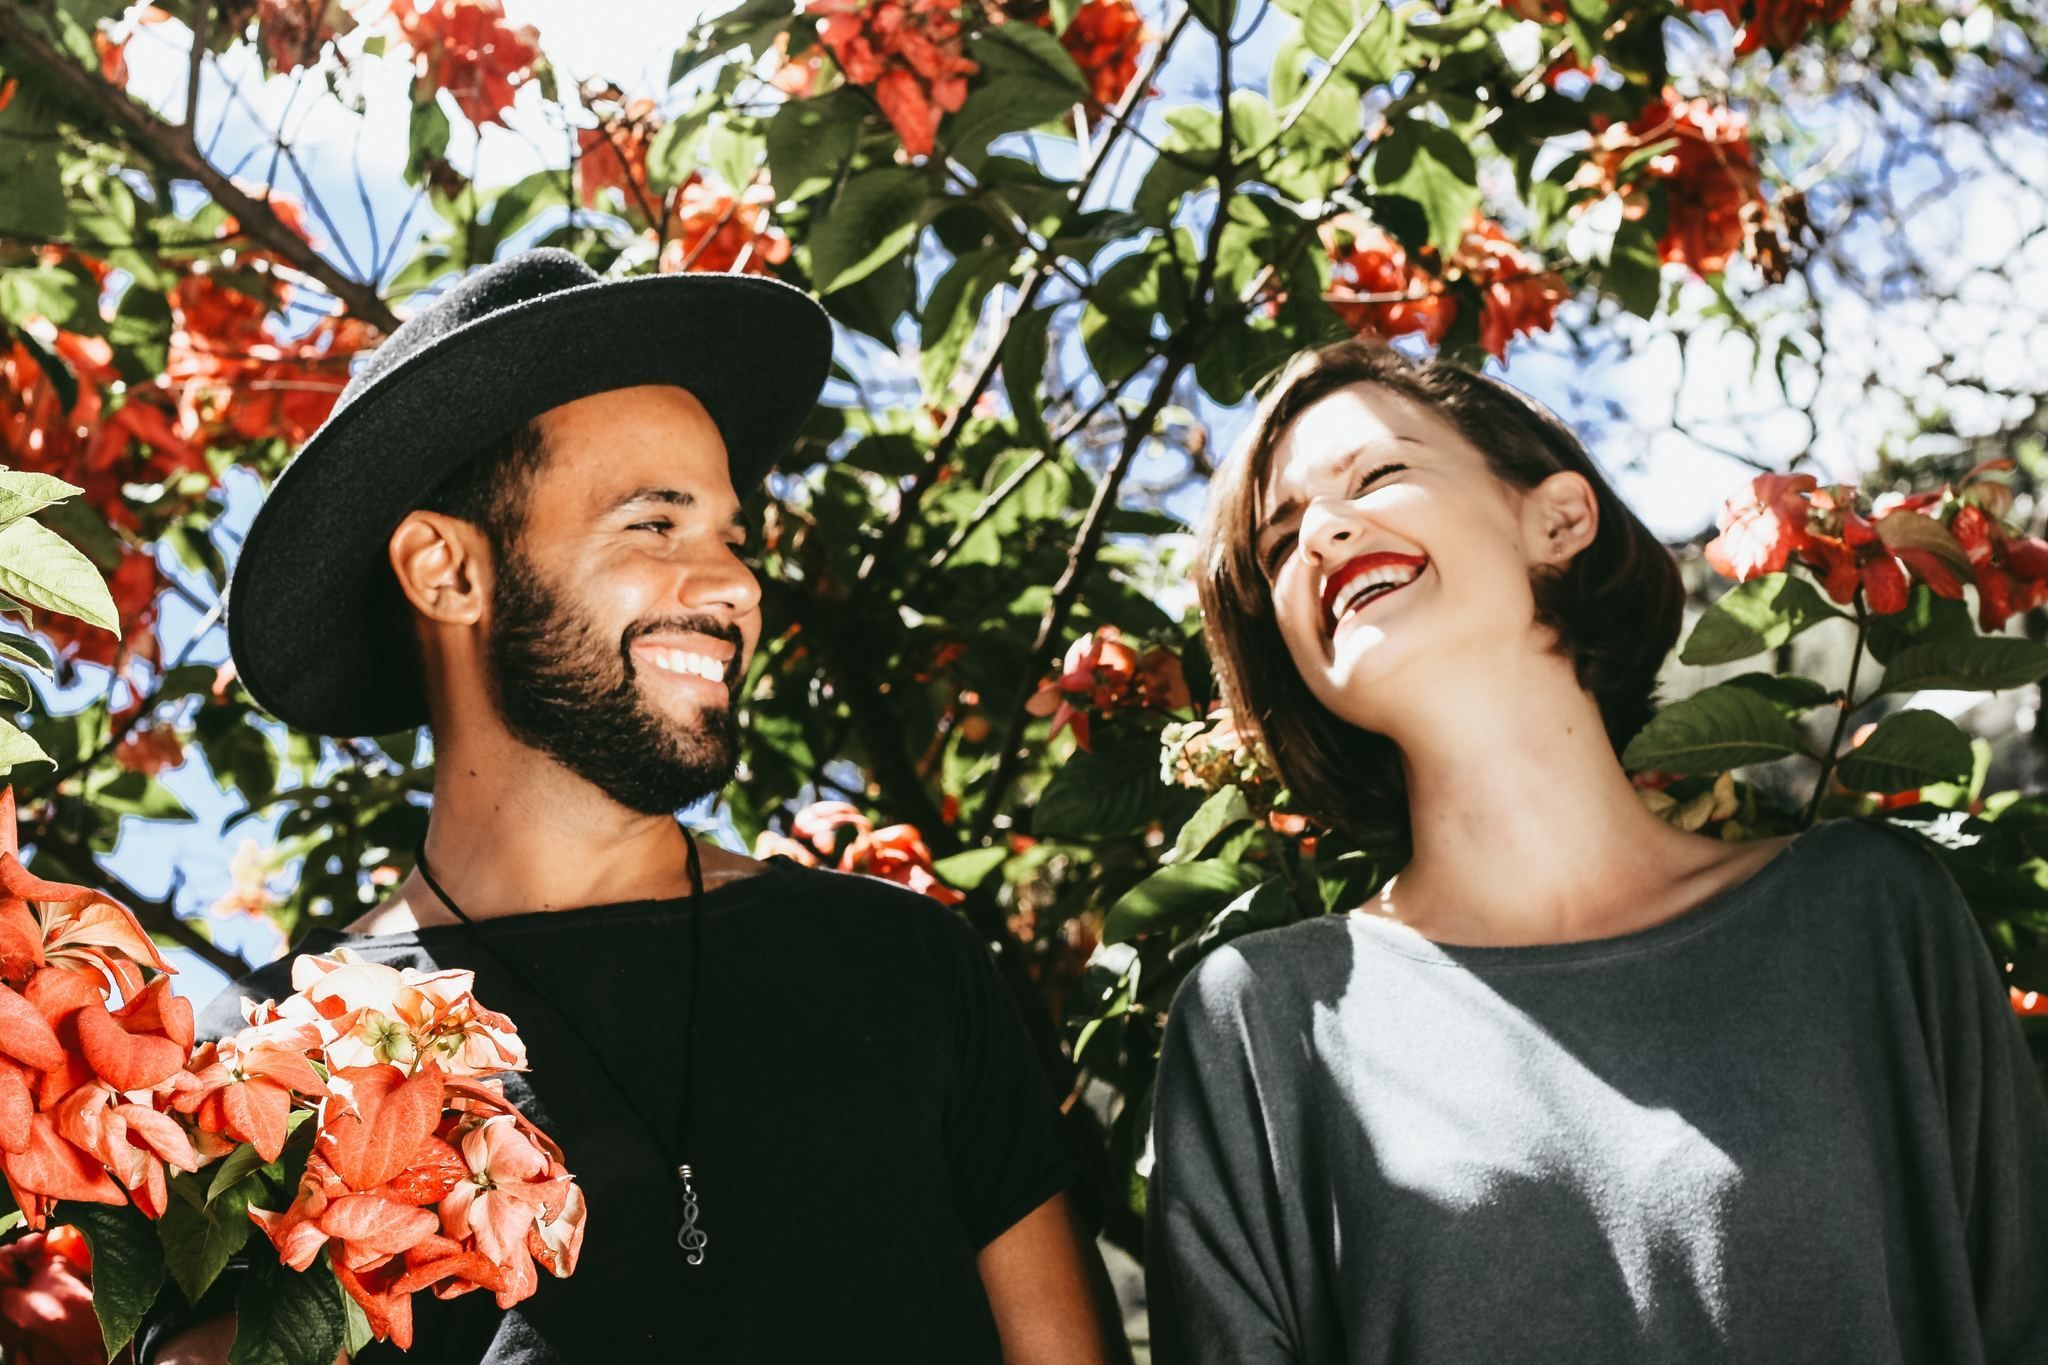 Знайомтесь заново й даруйте свободу: 4 корисні поради для пари, яка починає жити разом